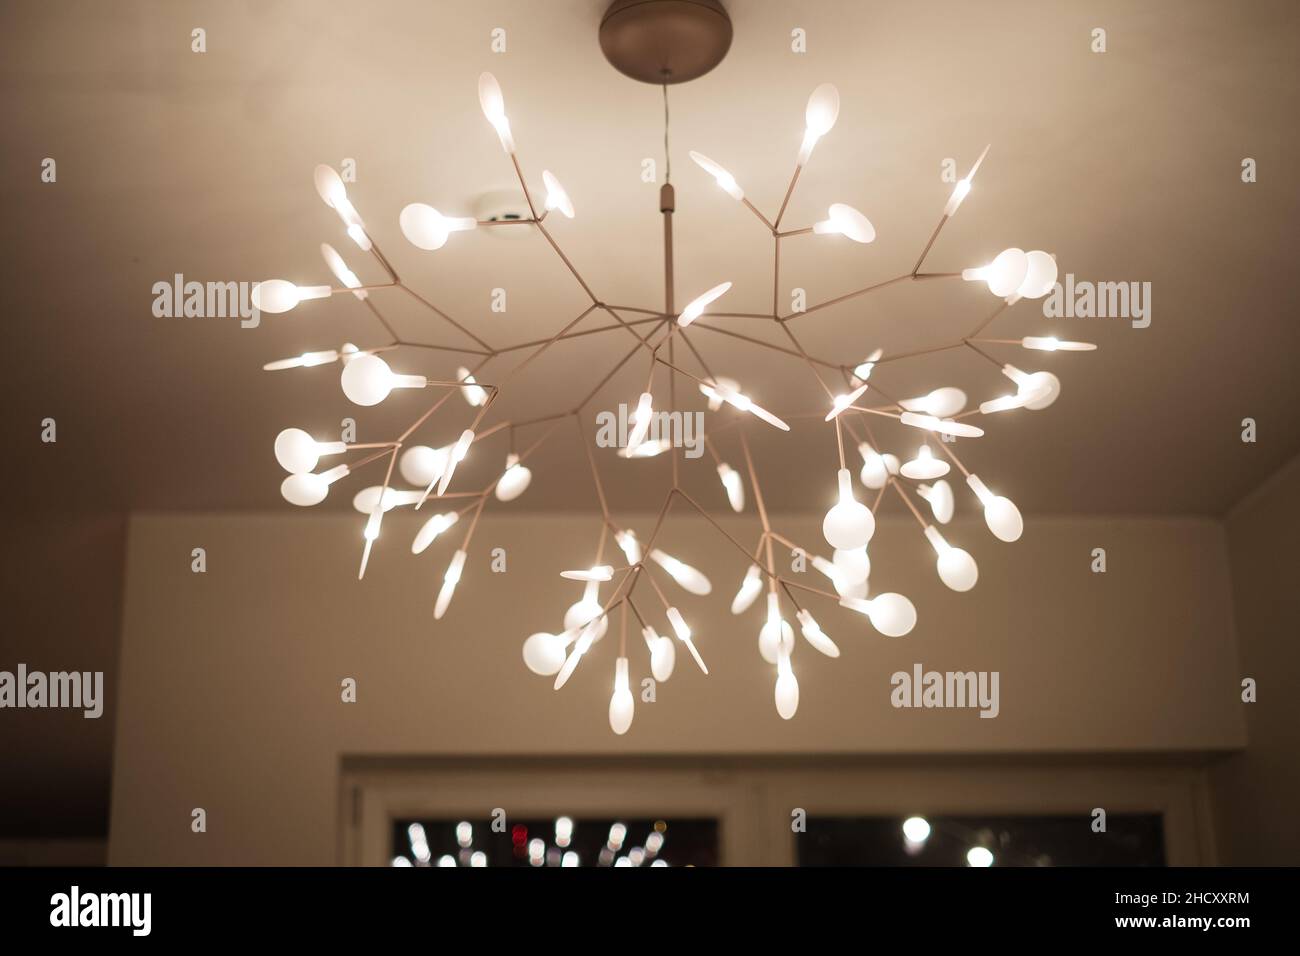 Schönes Design Deckenleuchte Kronleuchter Lampe. Stockfoto